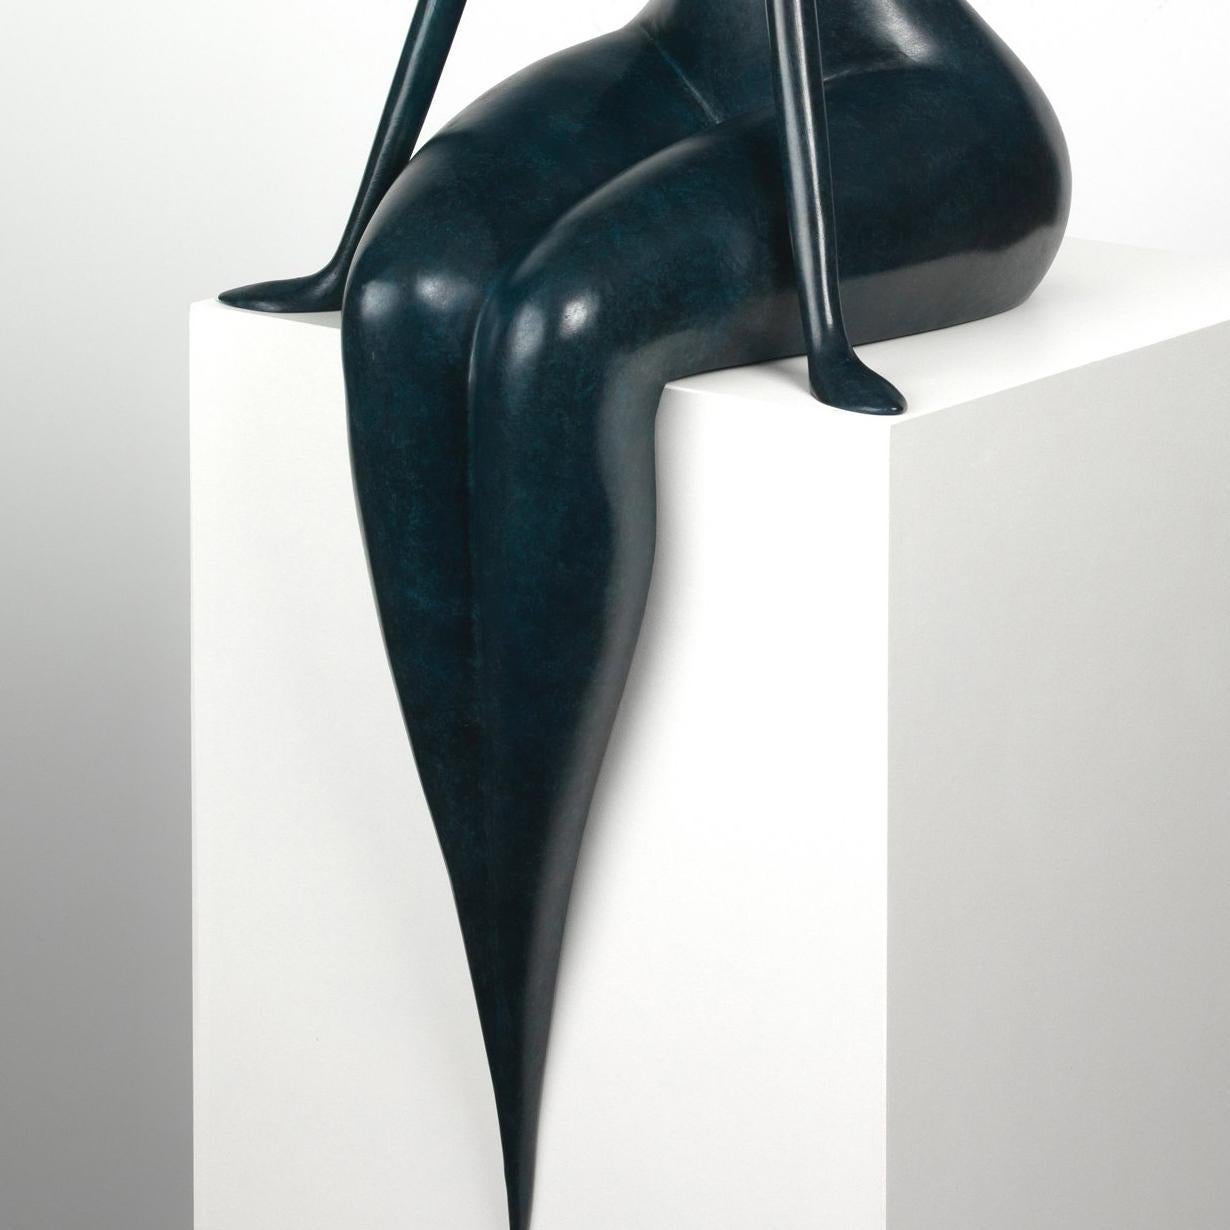 Muguet - Sculpture by Marie Madeleine Gautier